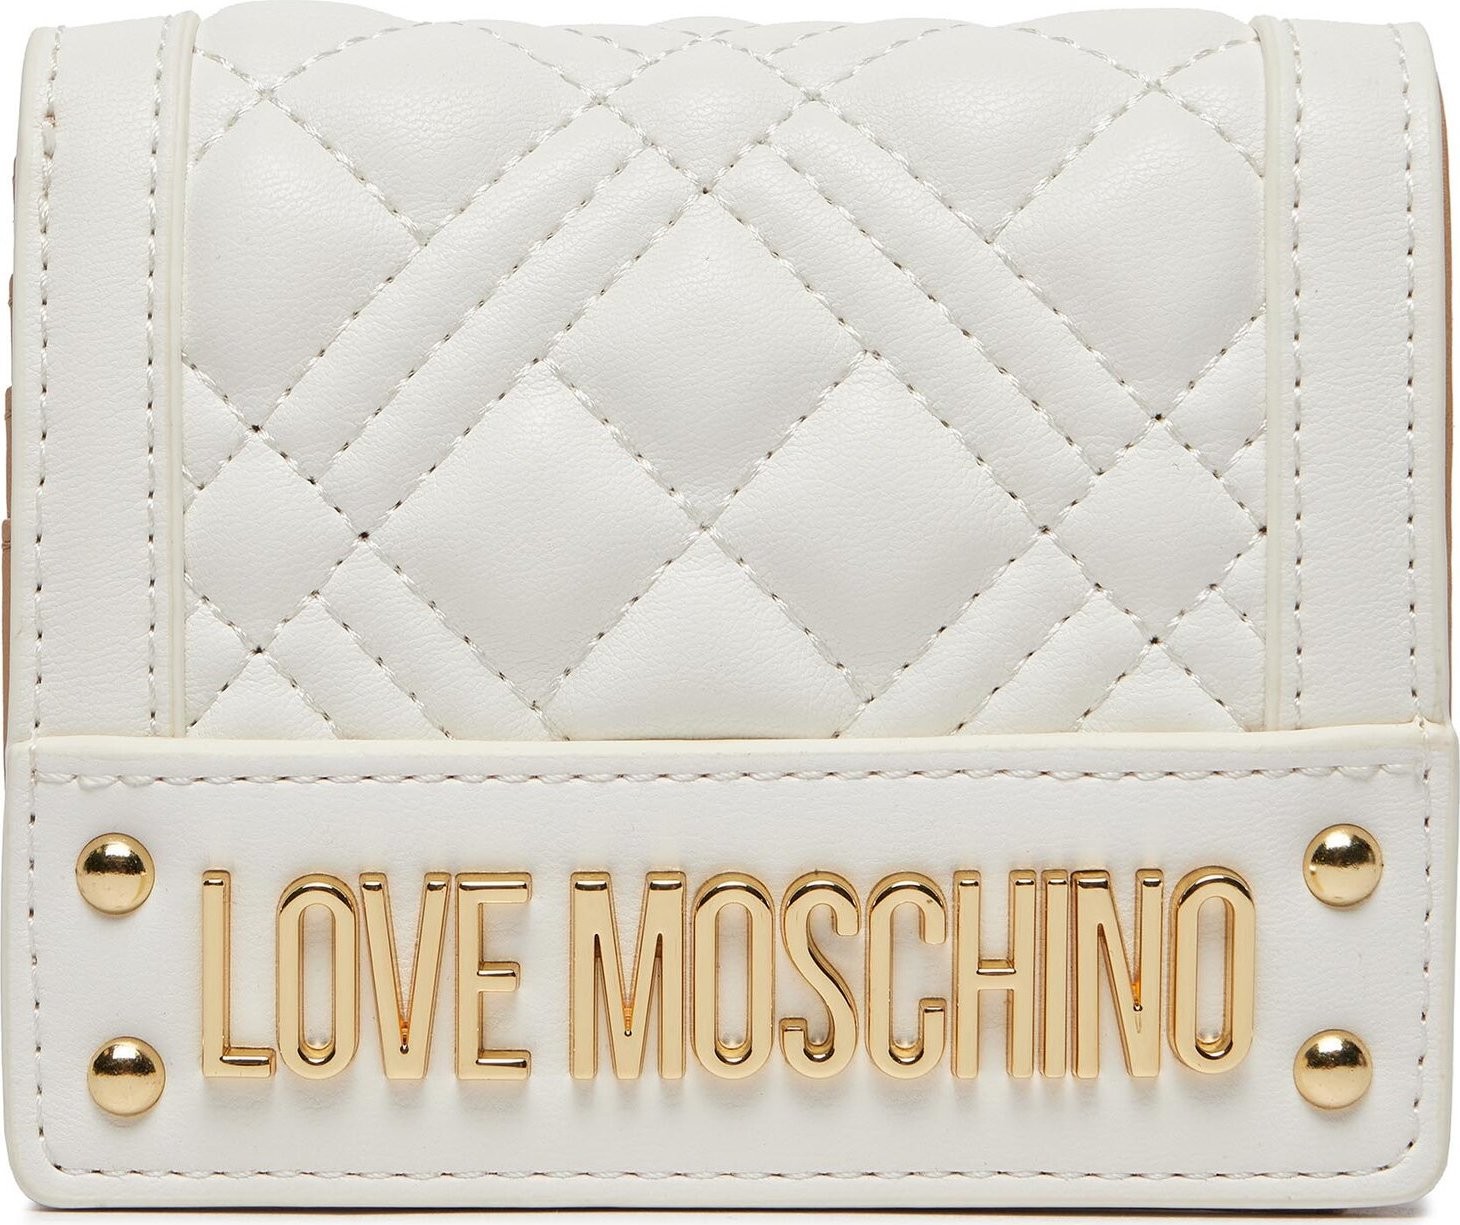 Velká dámská peněženka LOVE MOSCHINO JC5601PP0ILA0100 Bianco